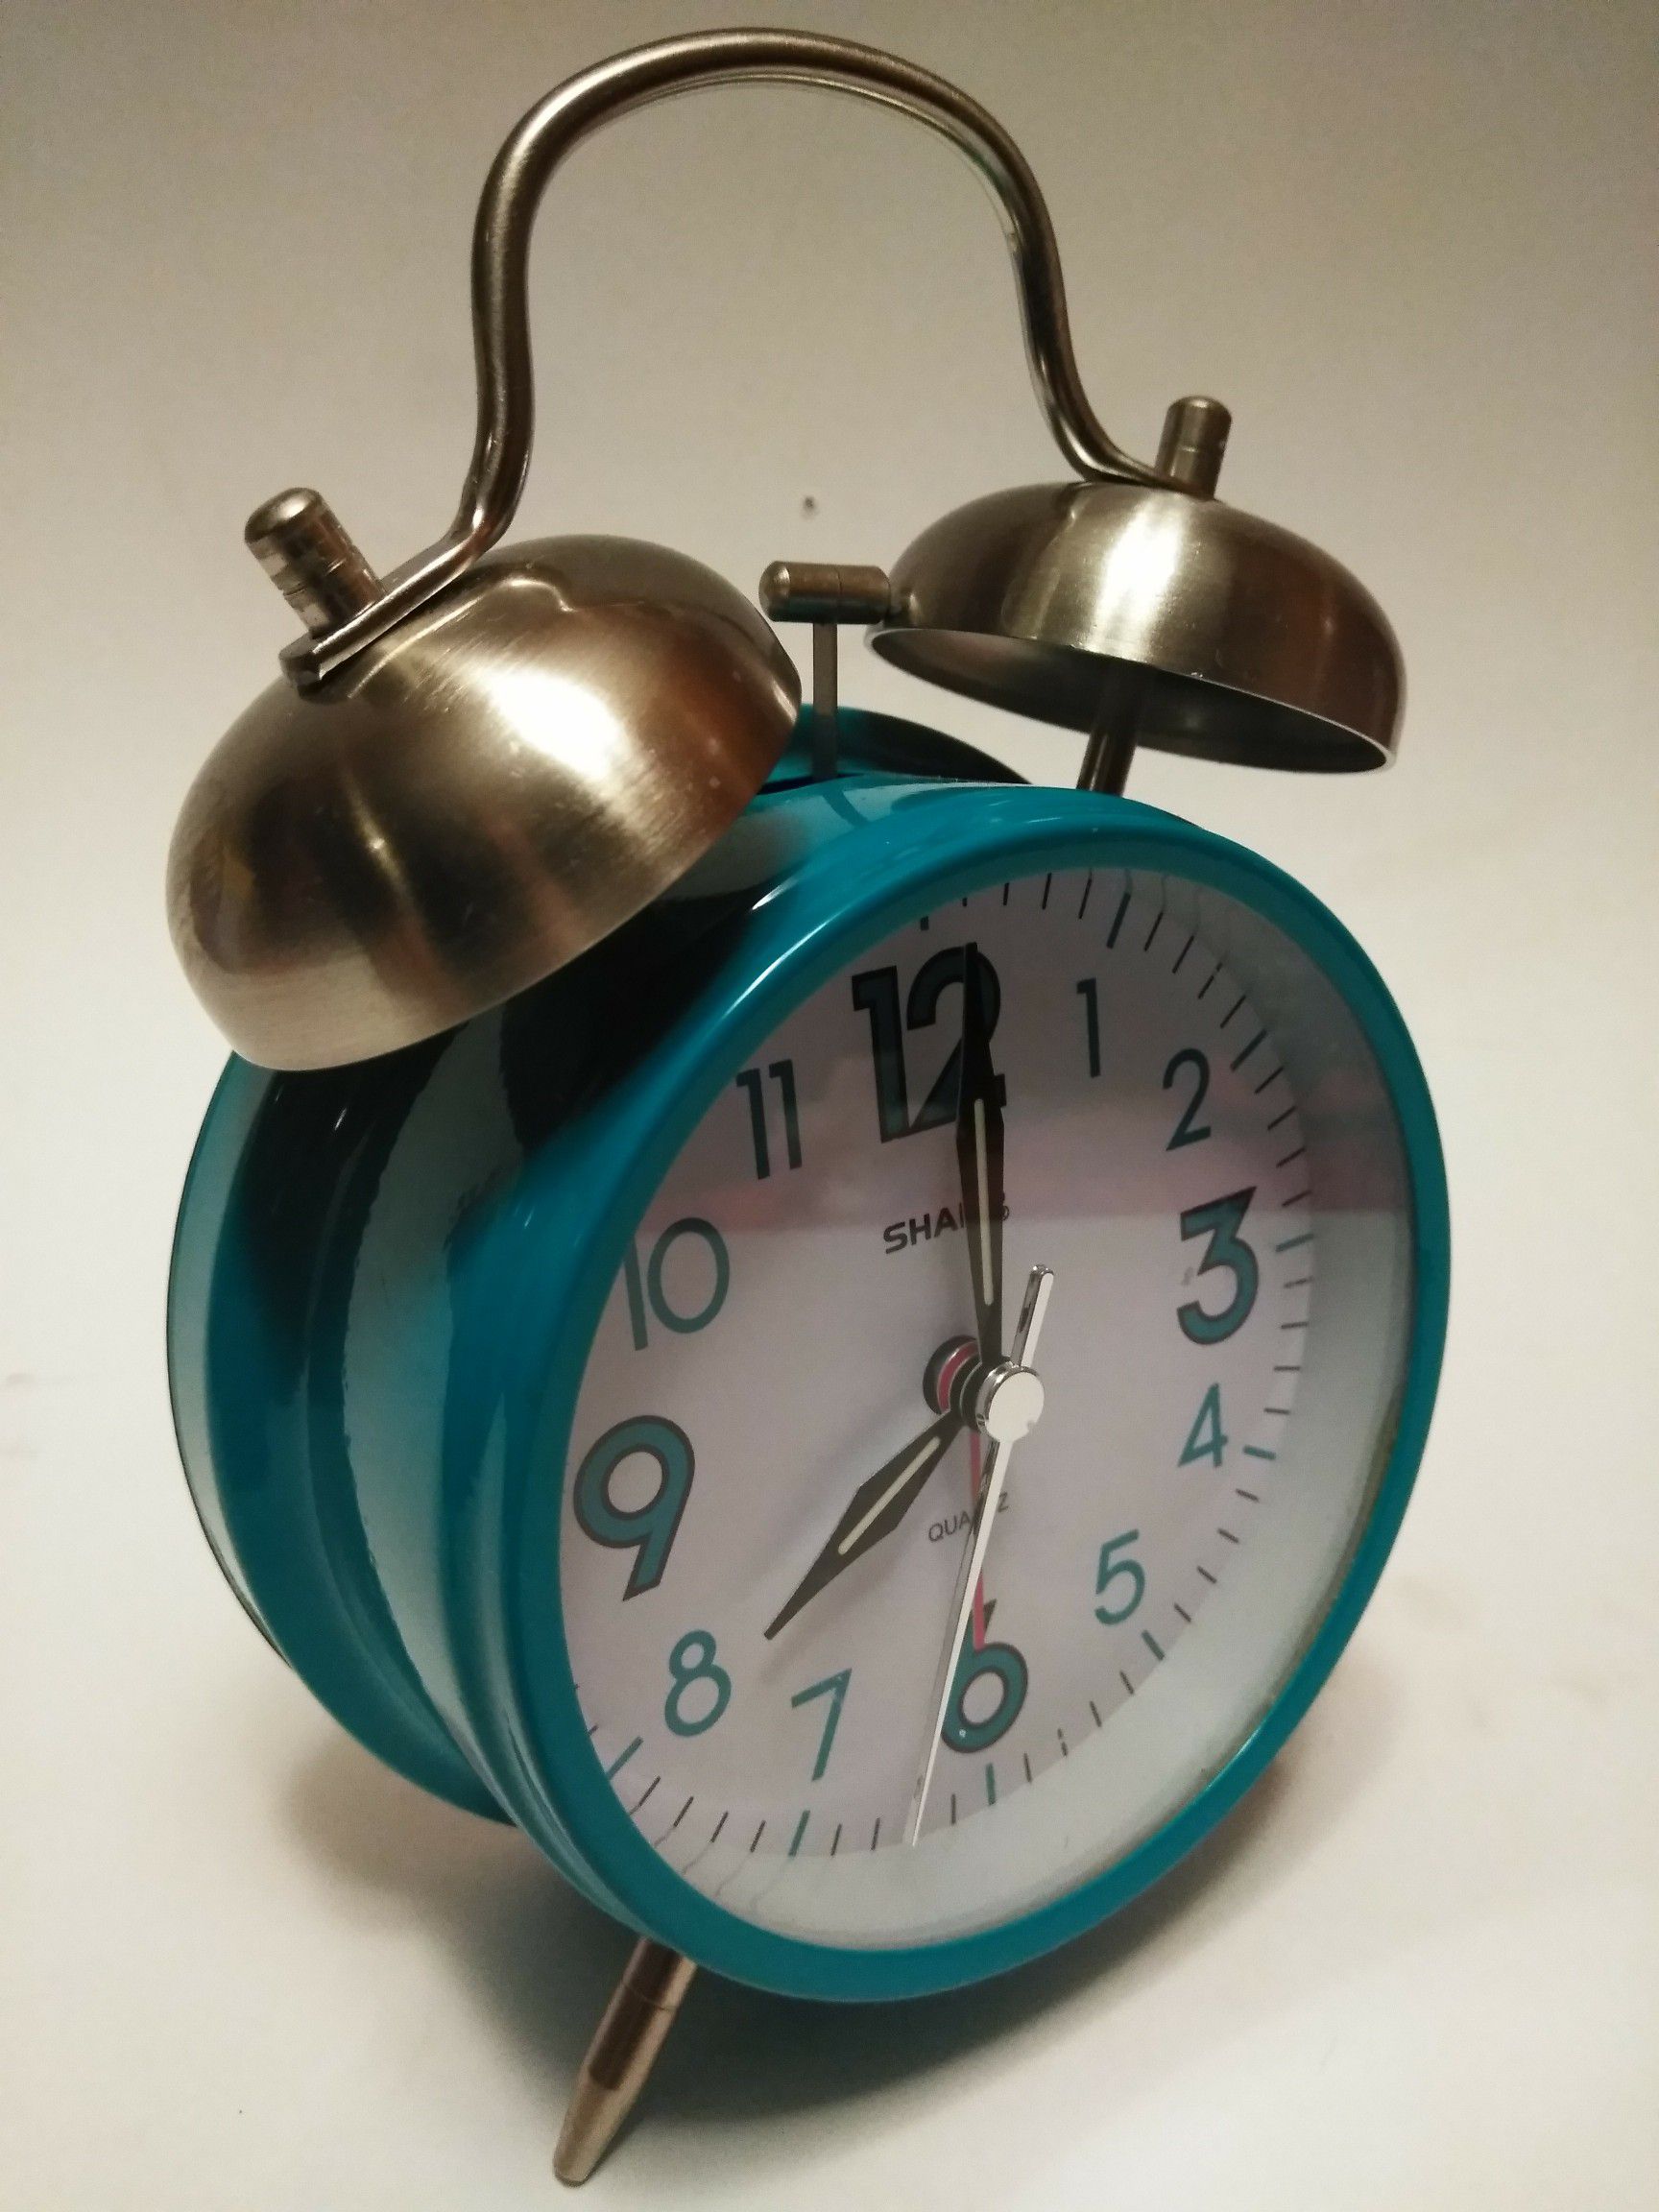 SHARP teal quarts alarm clock